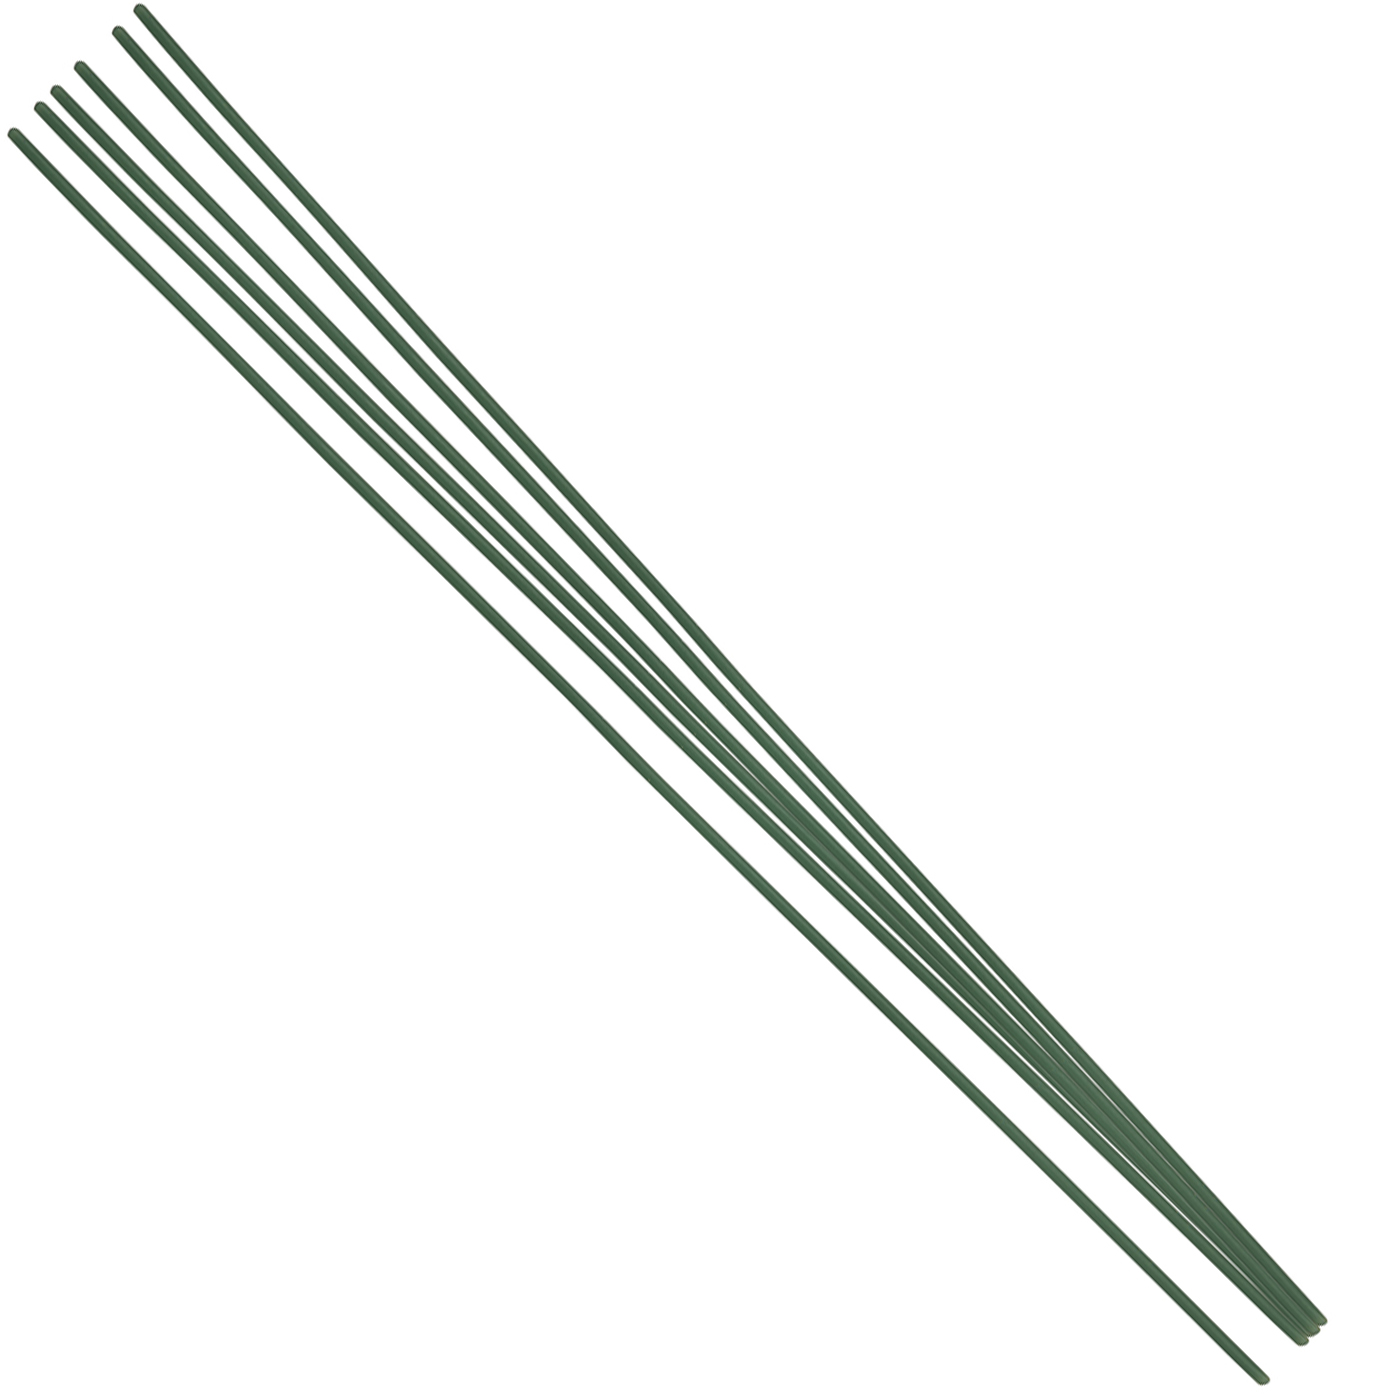 FINOWAX Wax Profiles, ø 1.20 mm, Green - 35 g